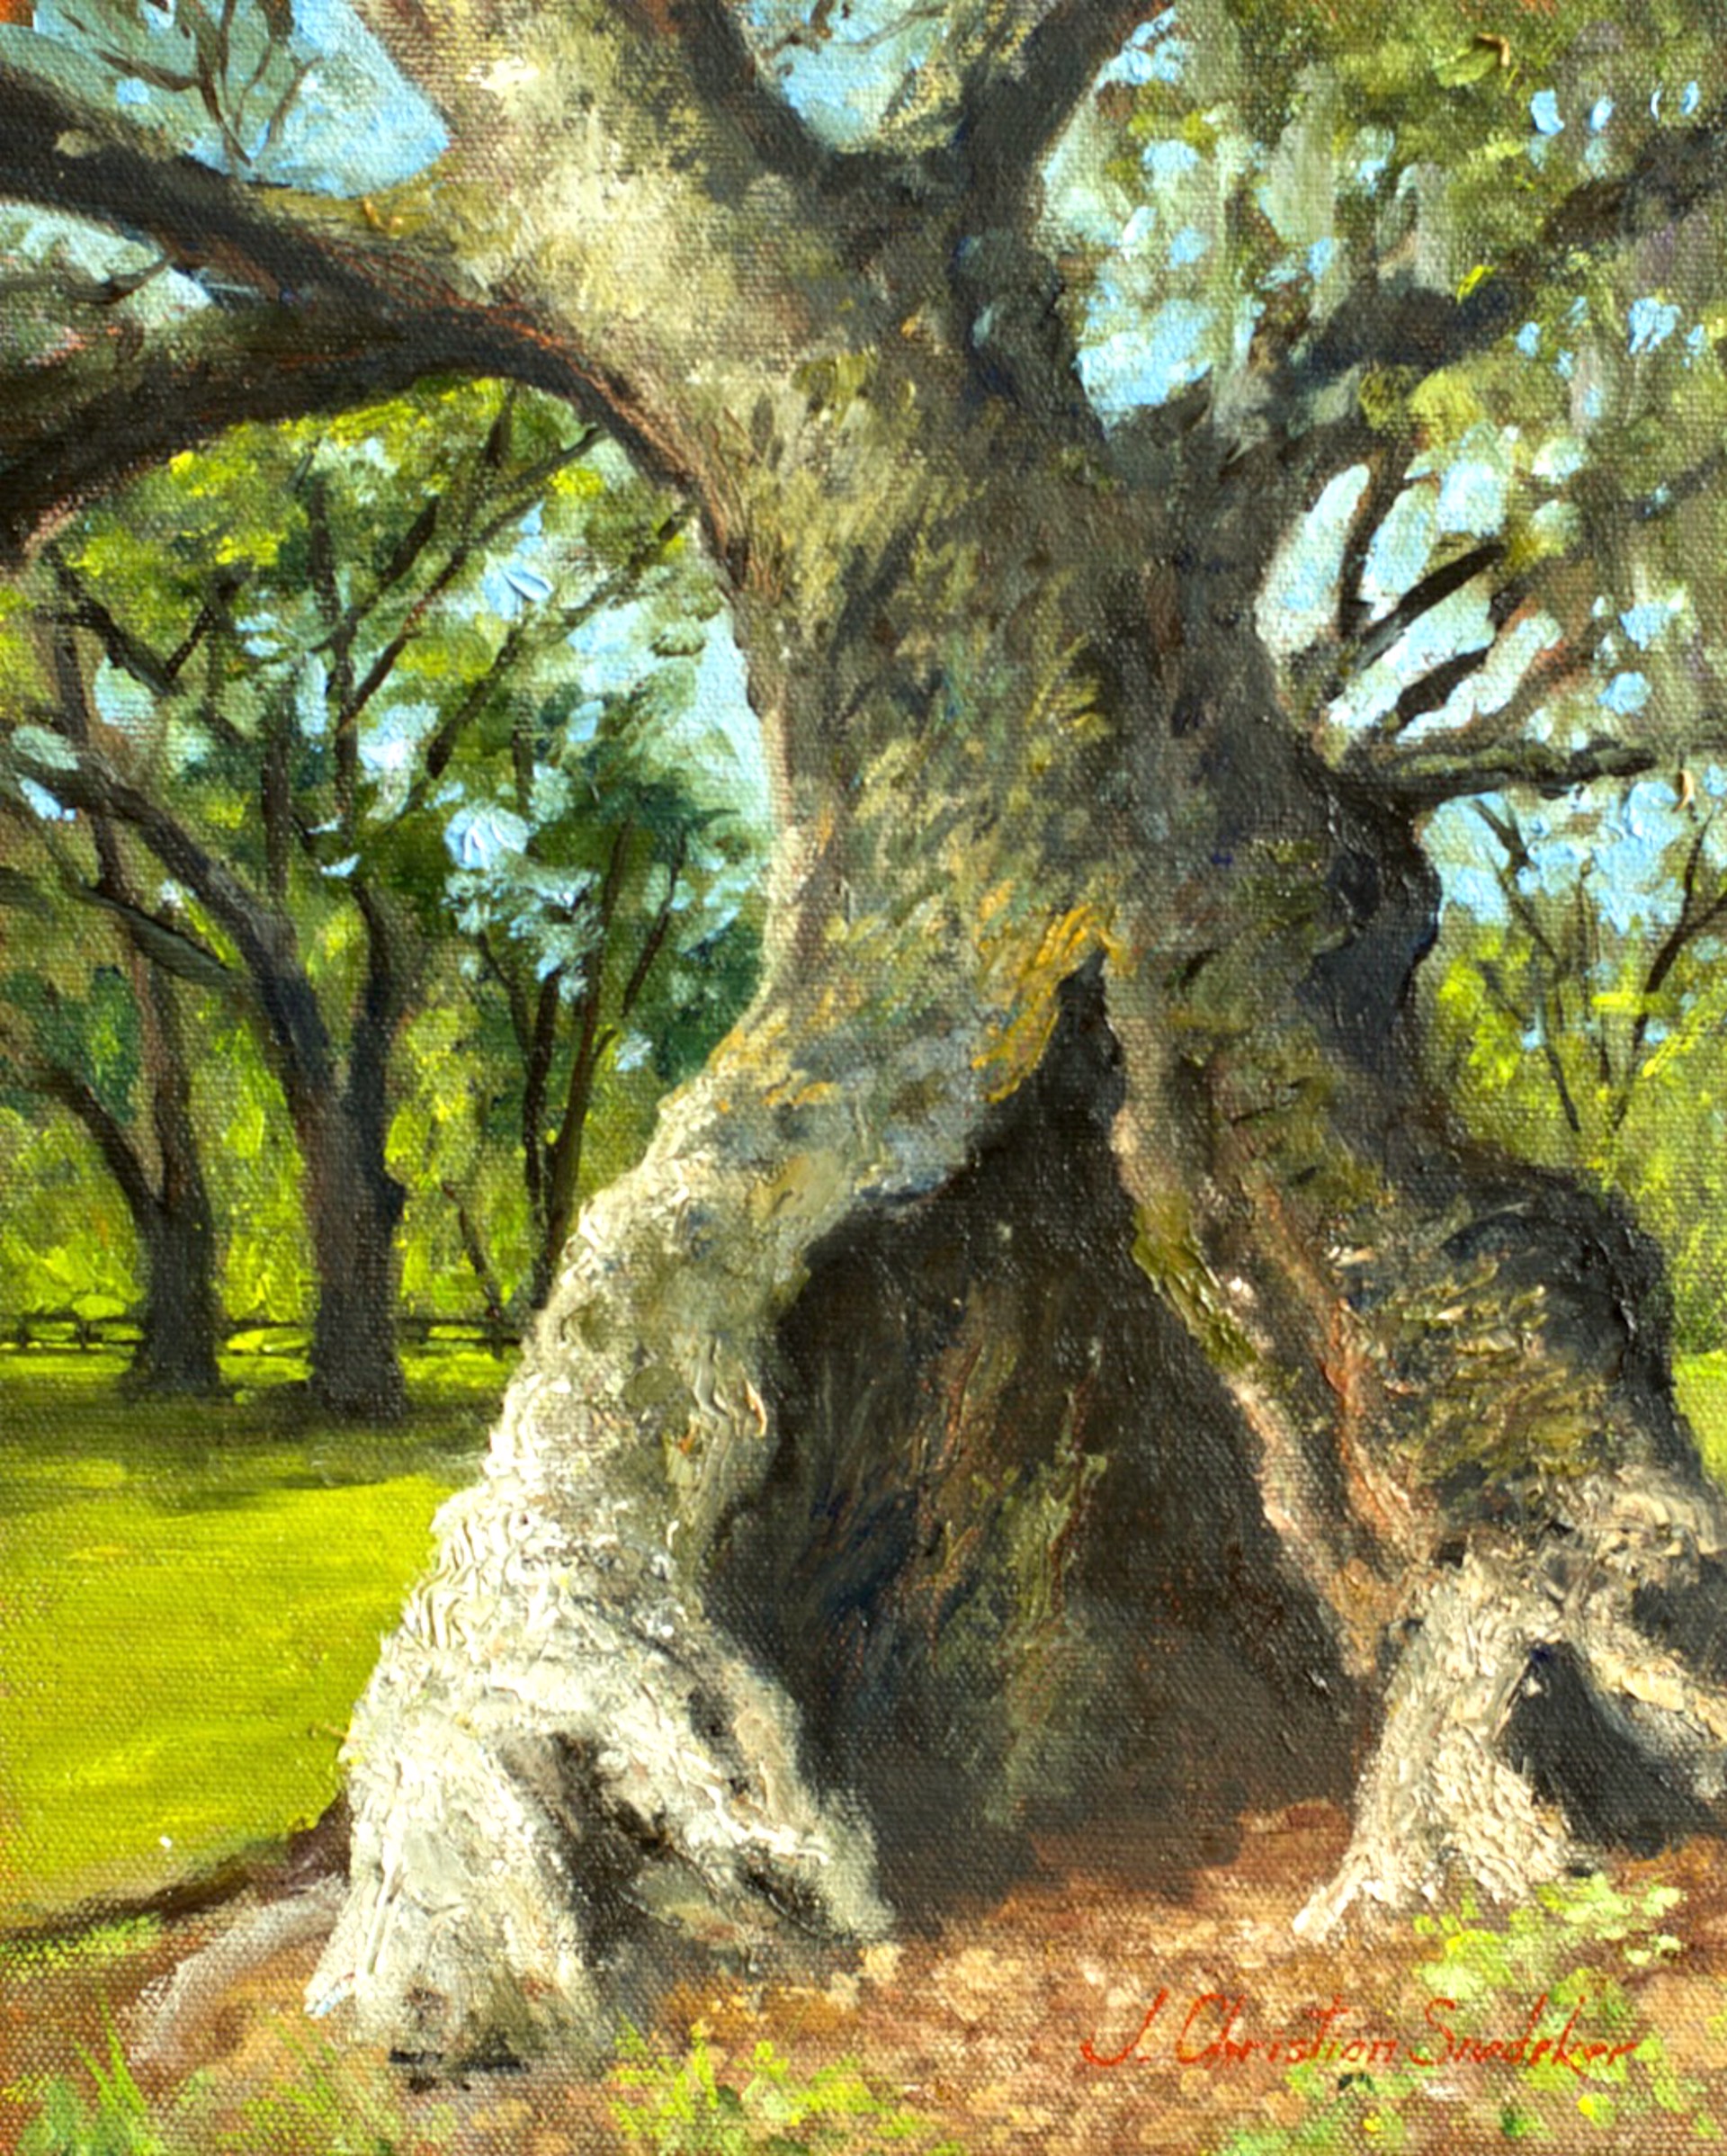 Mepkin Oak by J. Christian Snedeker